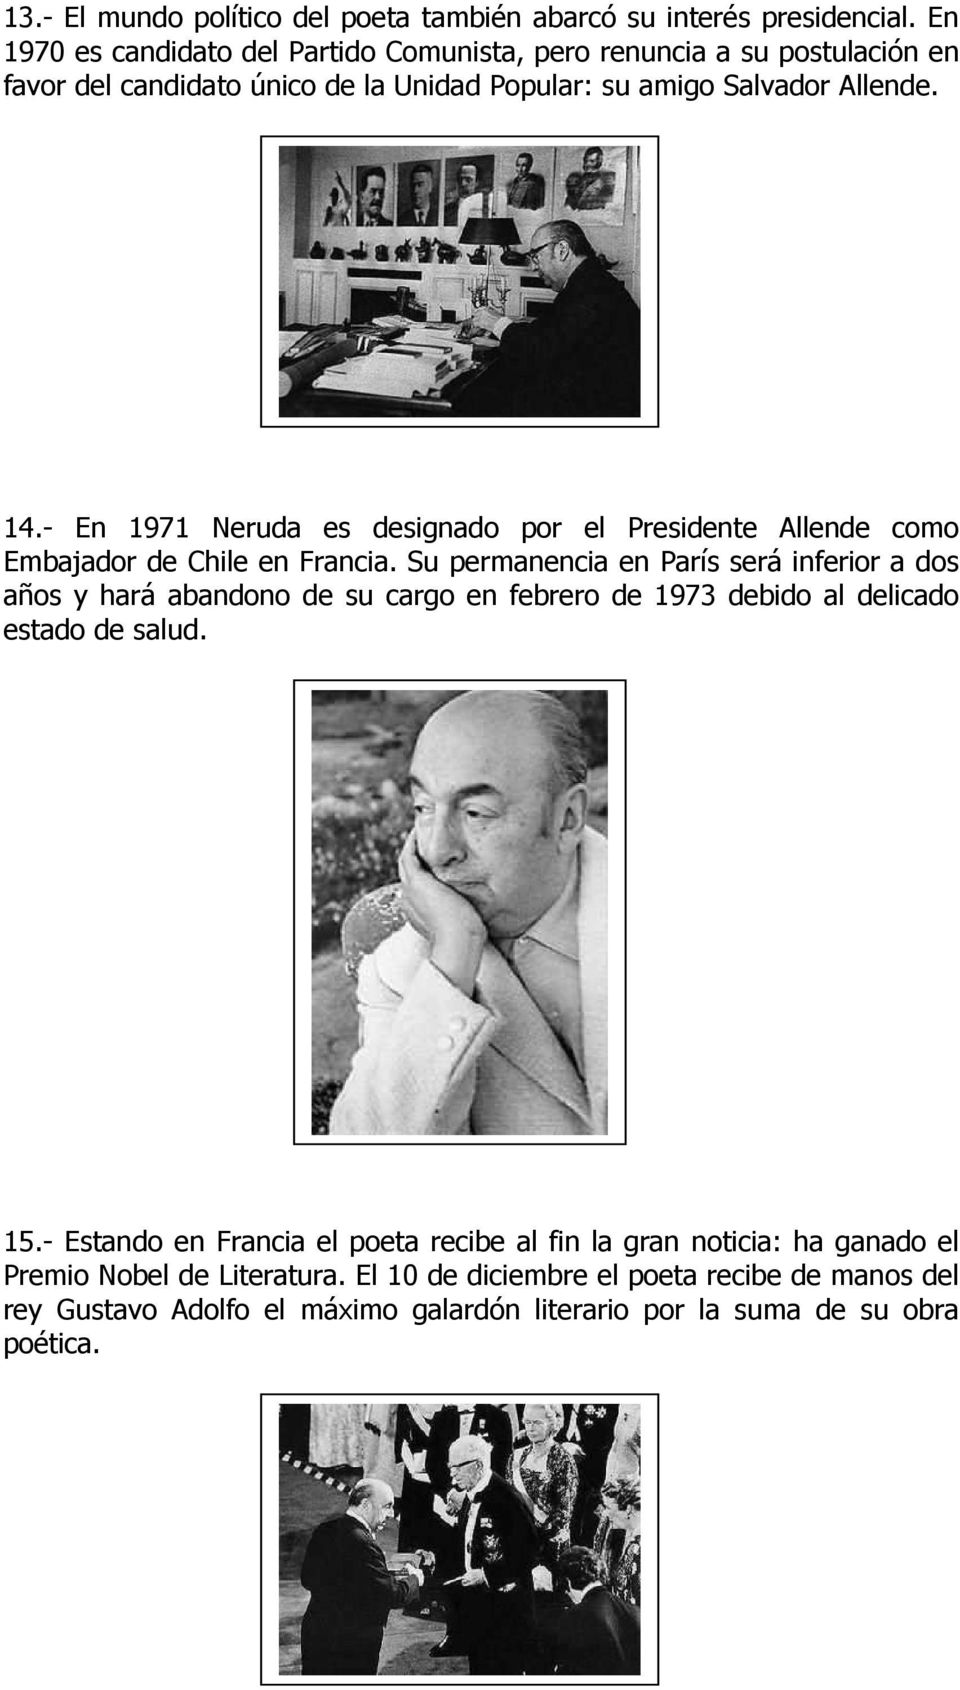 - En 1971 Neruda es designado por el Presidente Allende como Embajador de Chile en Francia.